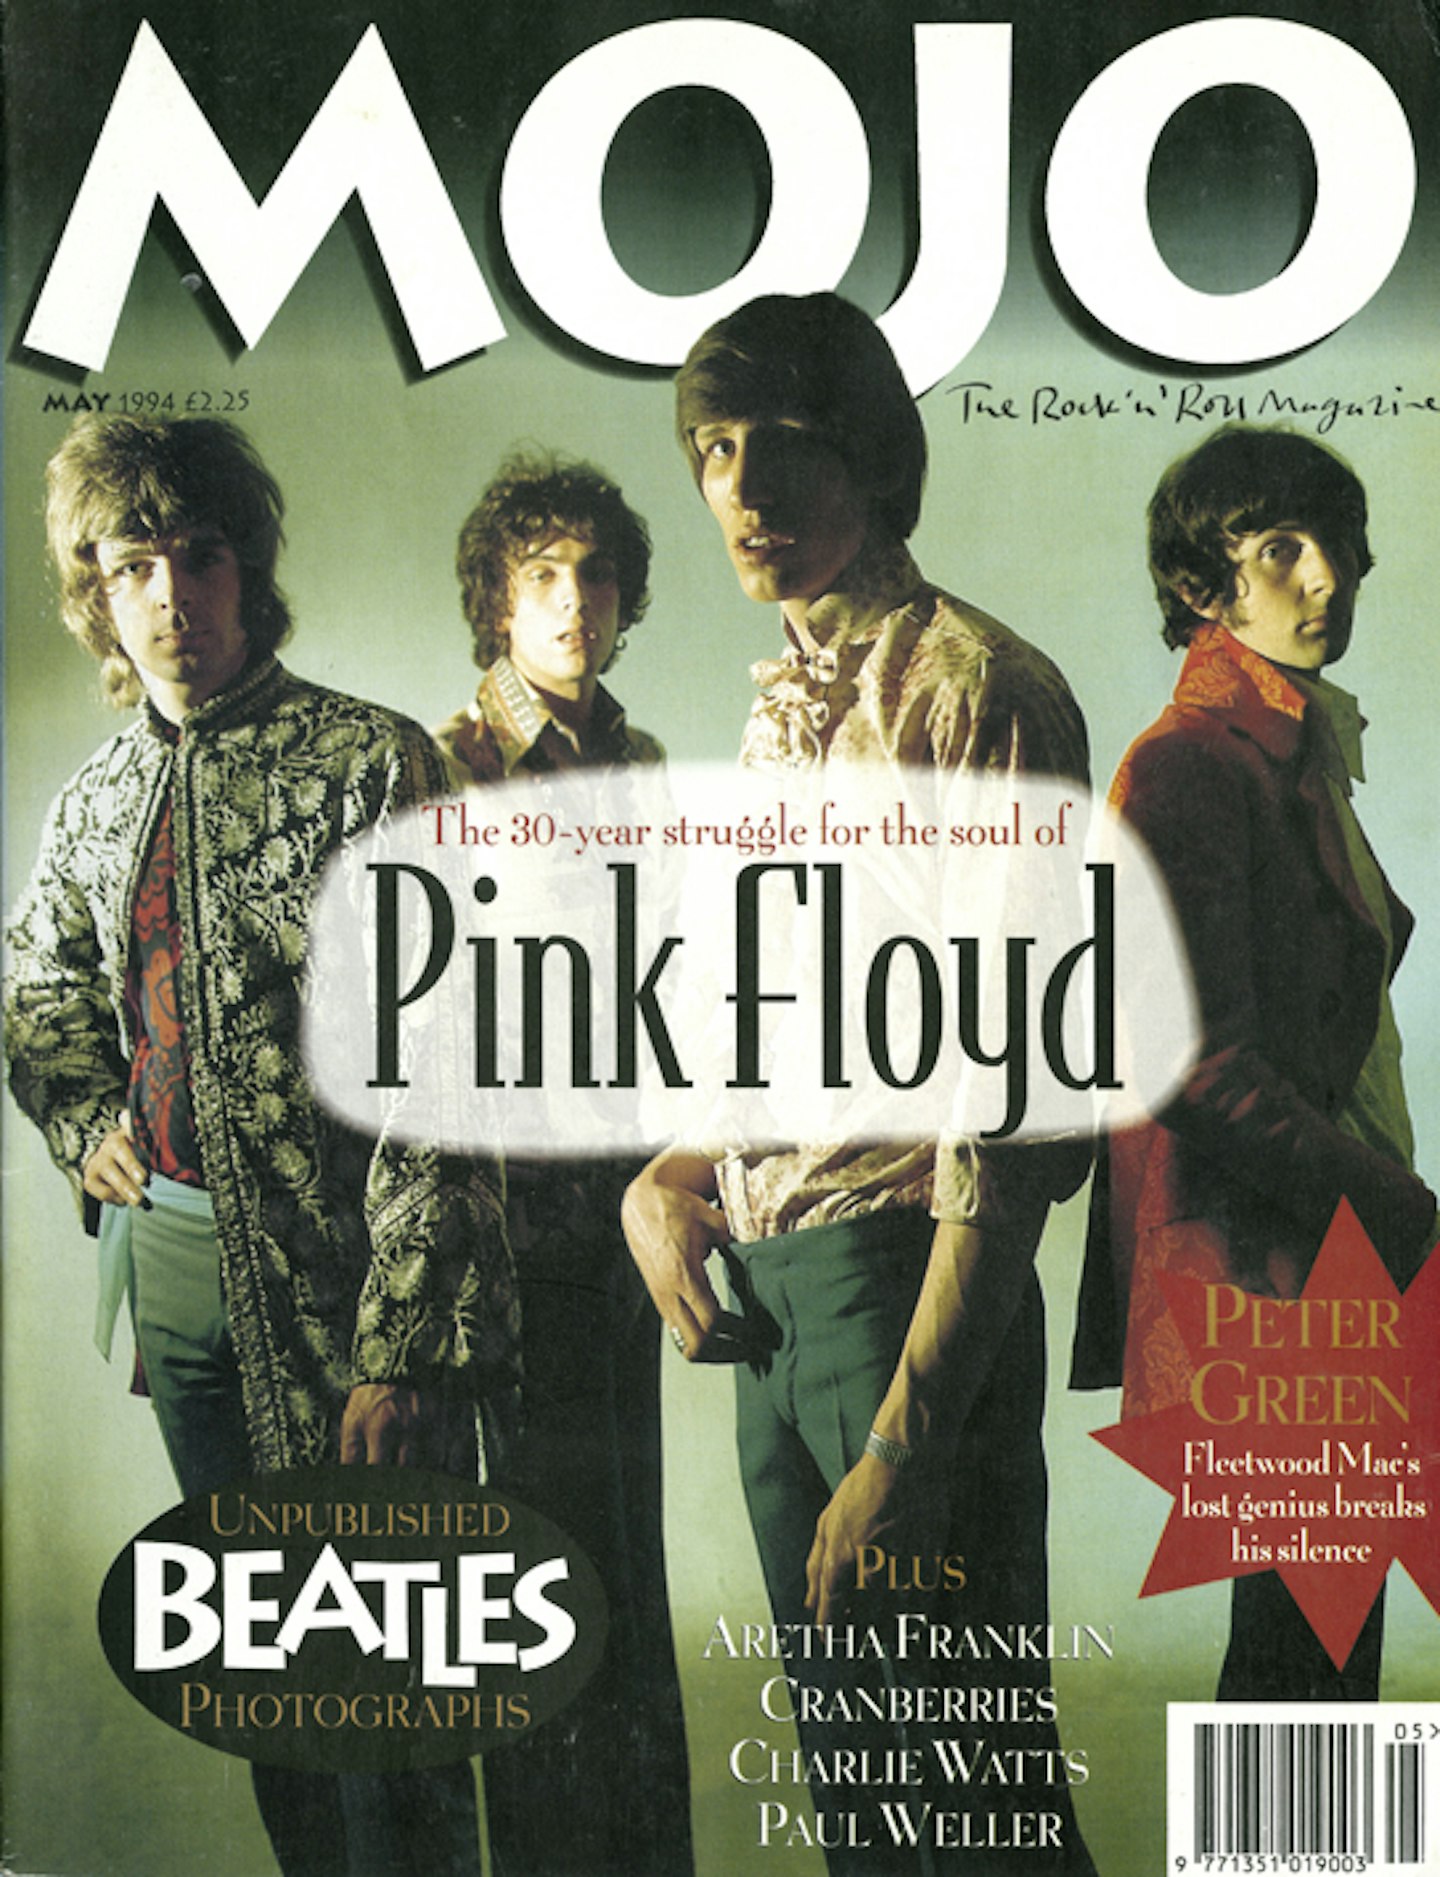 MOJO Issue 6 / May 1994